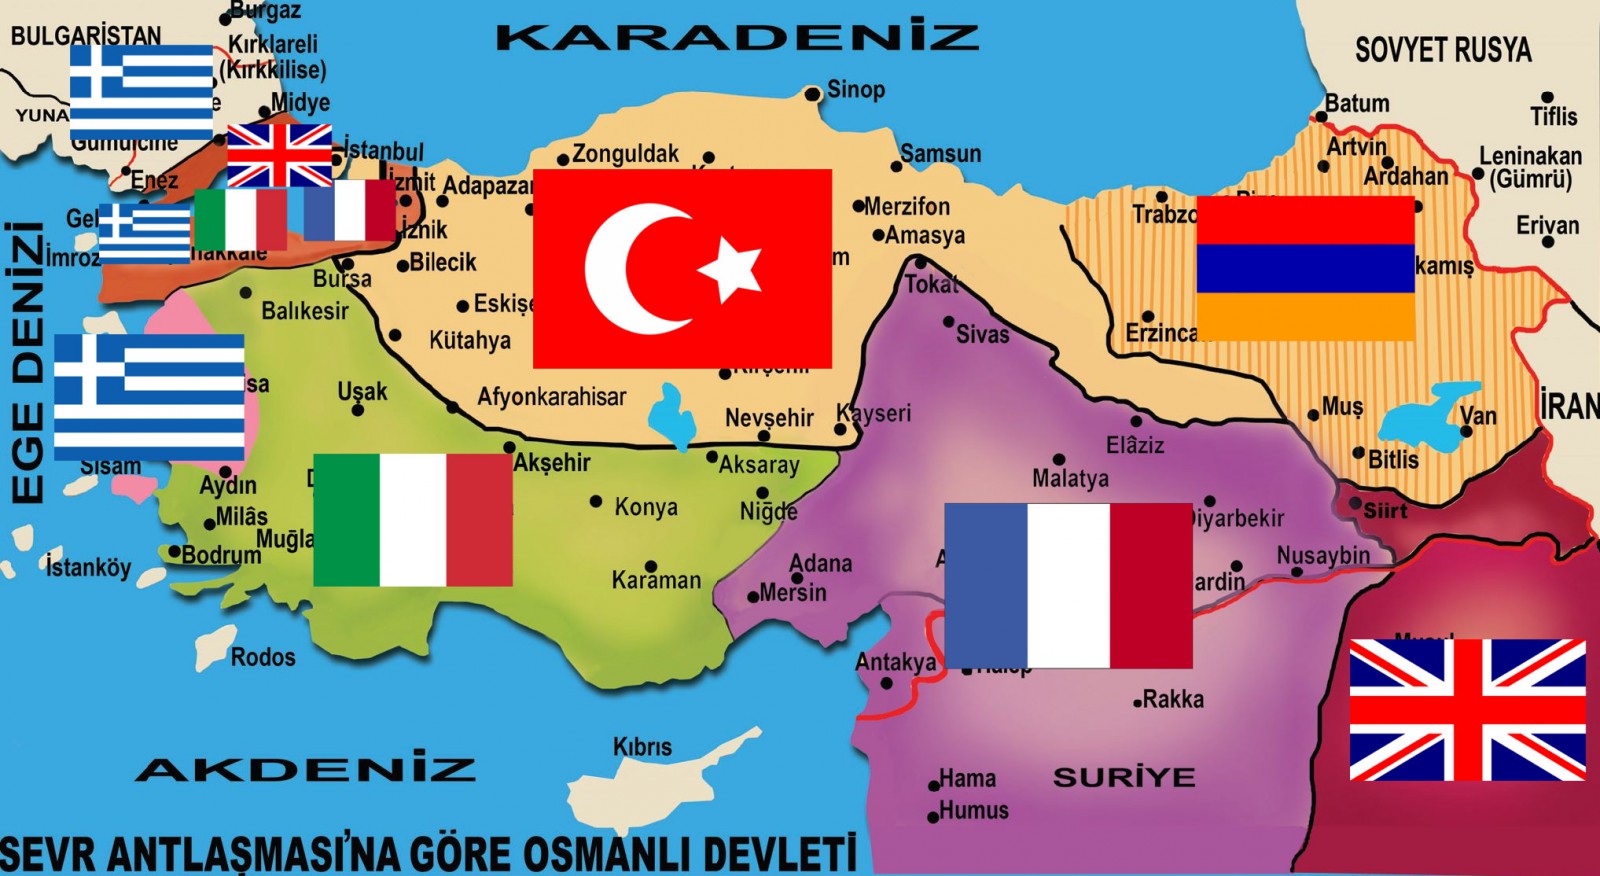 ATATÜRK HAVAALANIN'DA GÖNDERE kürt bölgesel bayrağı ÇEKİLDİ